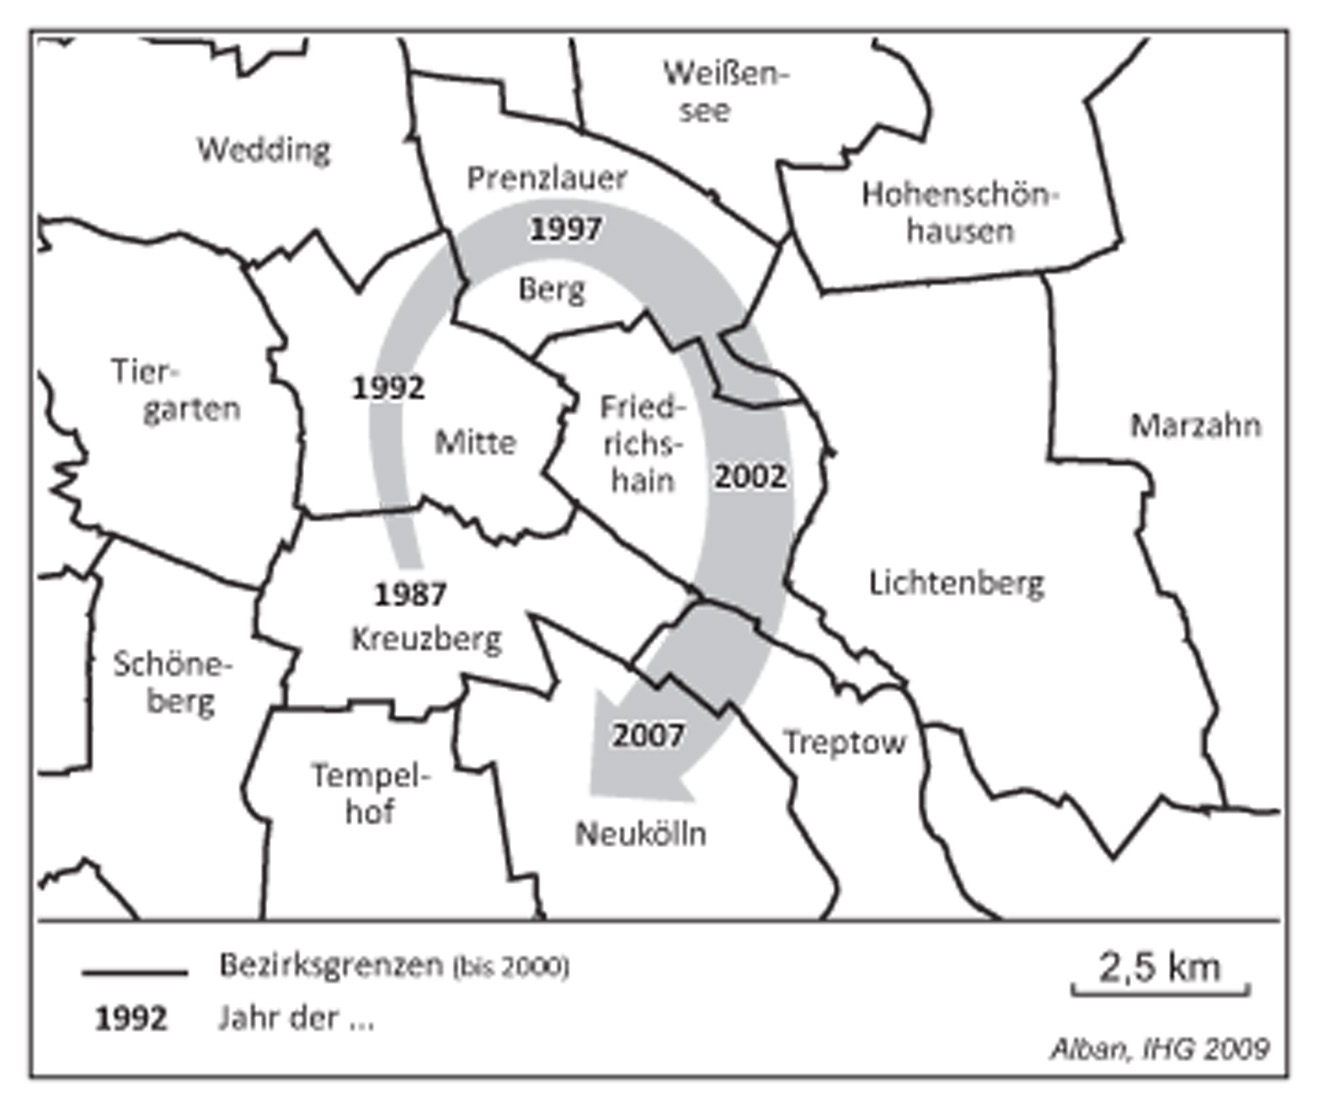 Räumliche Verlagerung von Pionierphasen der Gentrification in Berlin (1987-2007)